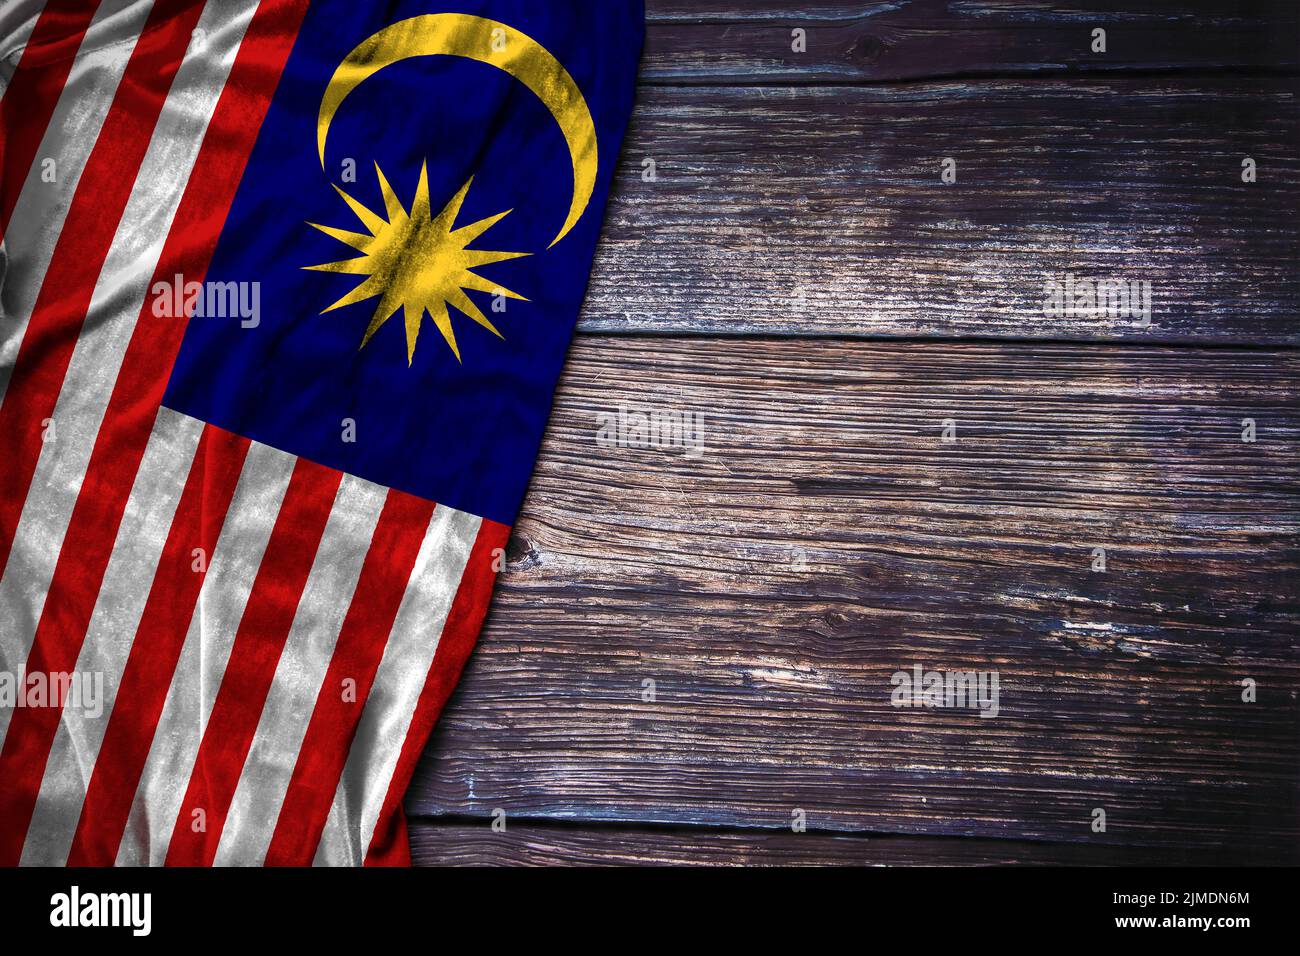 Bandera malaya sobre un fondo rústico de madera para el concepto de Día Nacional de Malasia, Día del Recuerdo o Día del Trabajo. Foto de stock